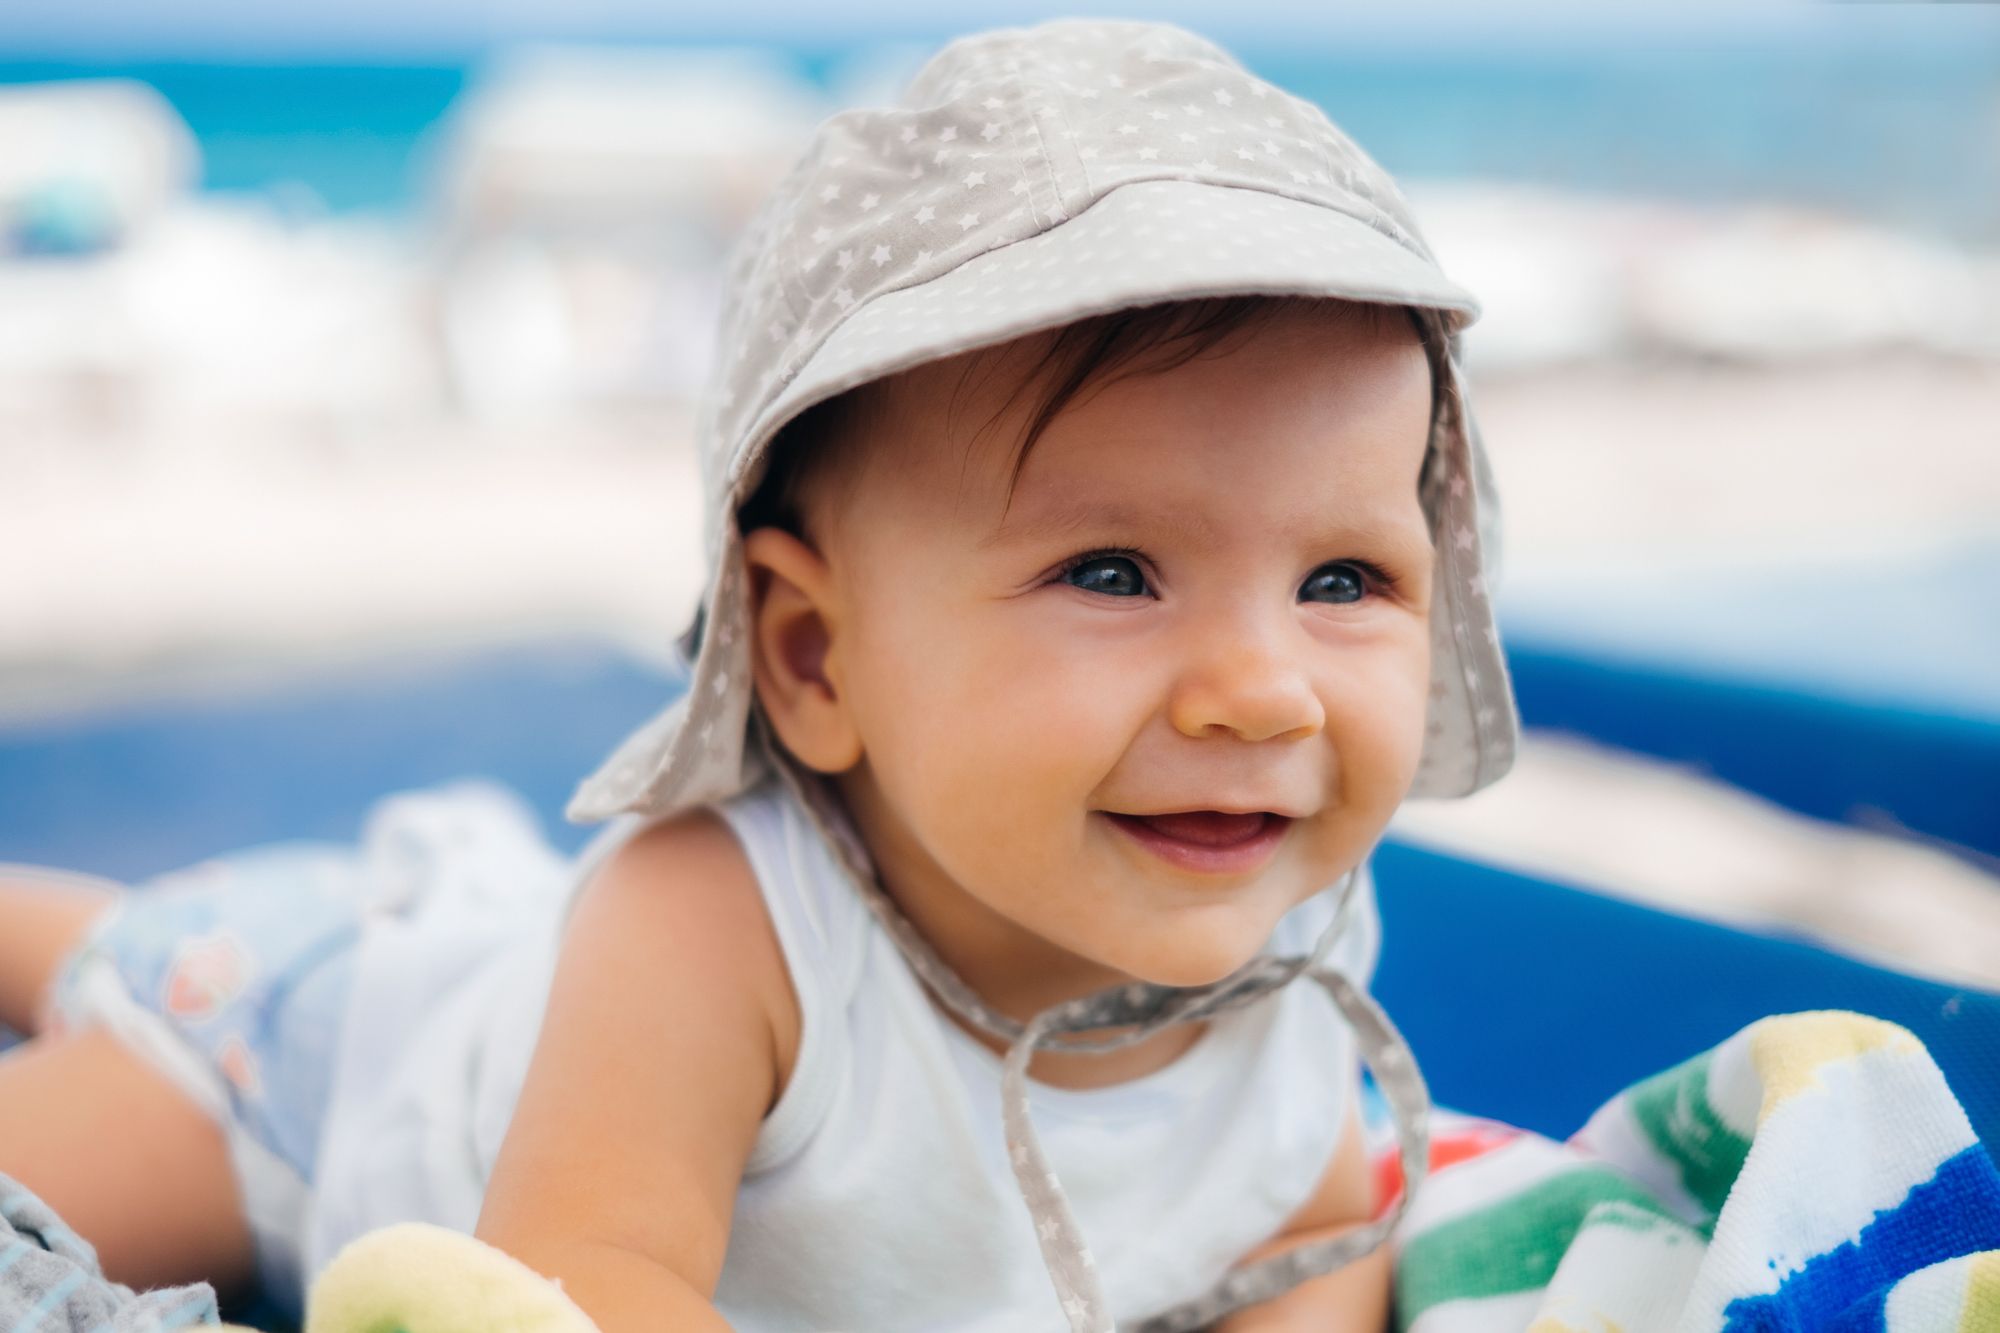 Veeg hoe te gebruiken Betrokken 10 Best Baby Sun Hats for Summer 2022 - Baby Beach Hats on Amazon